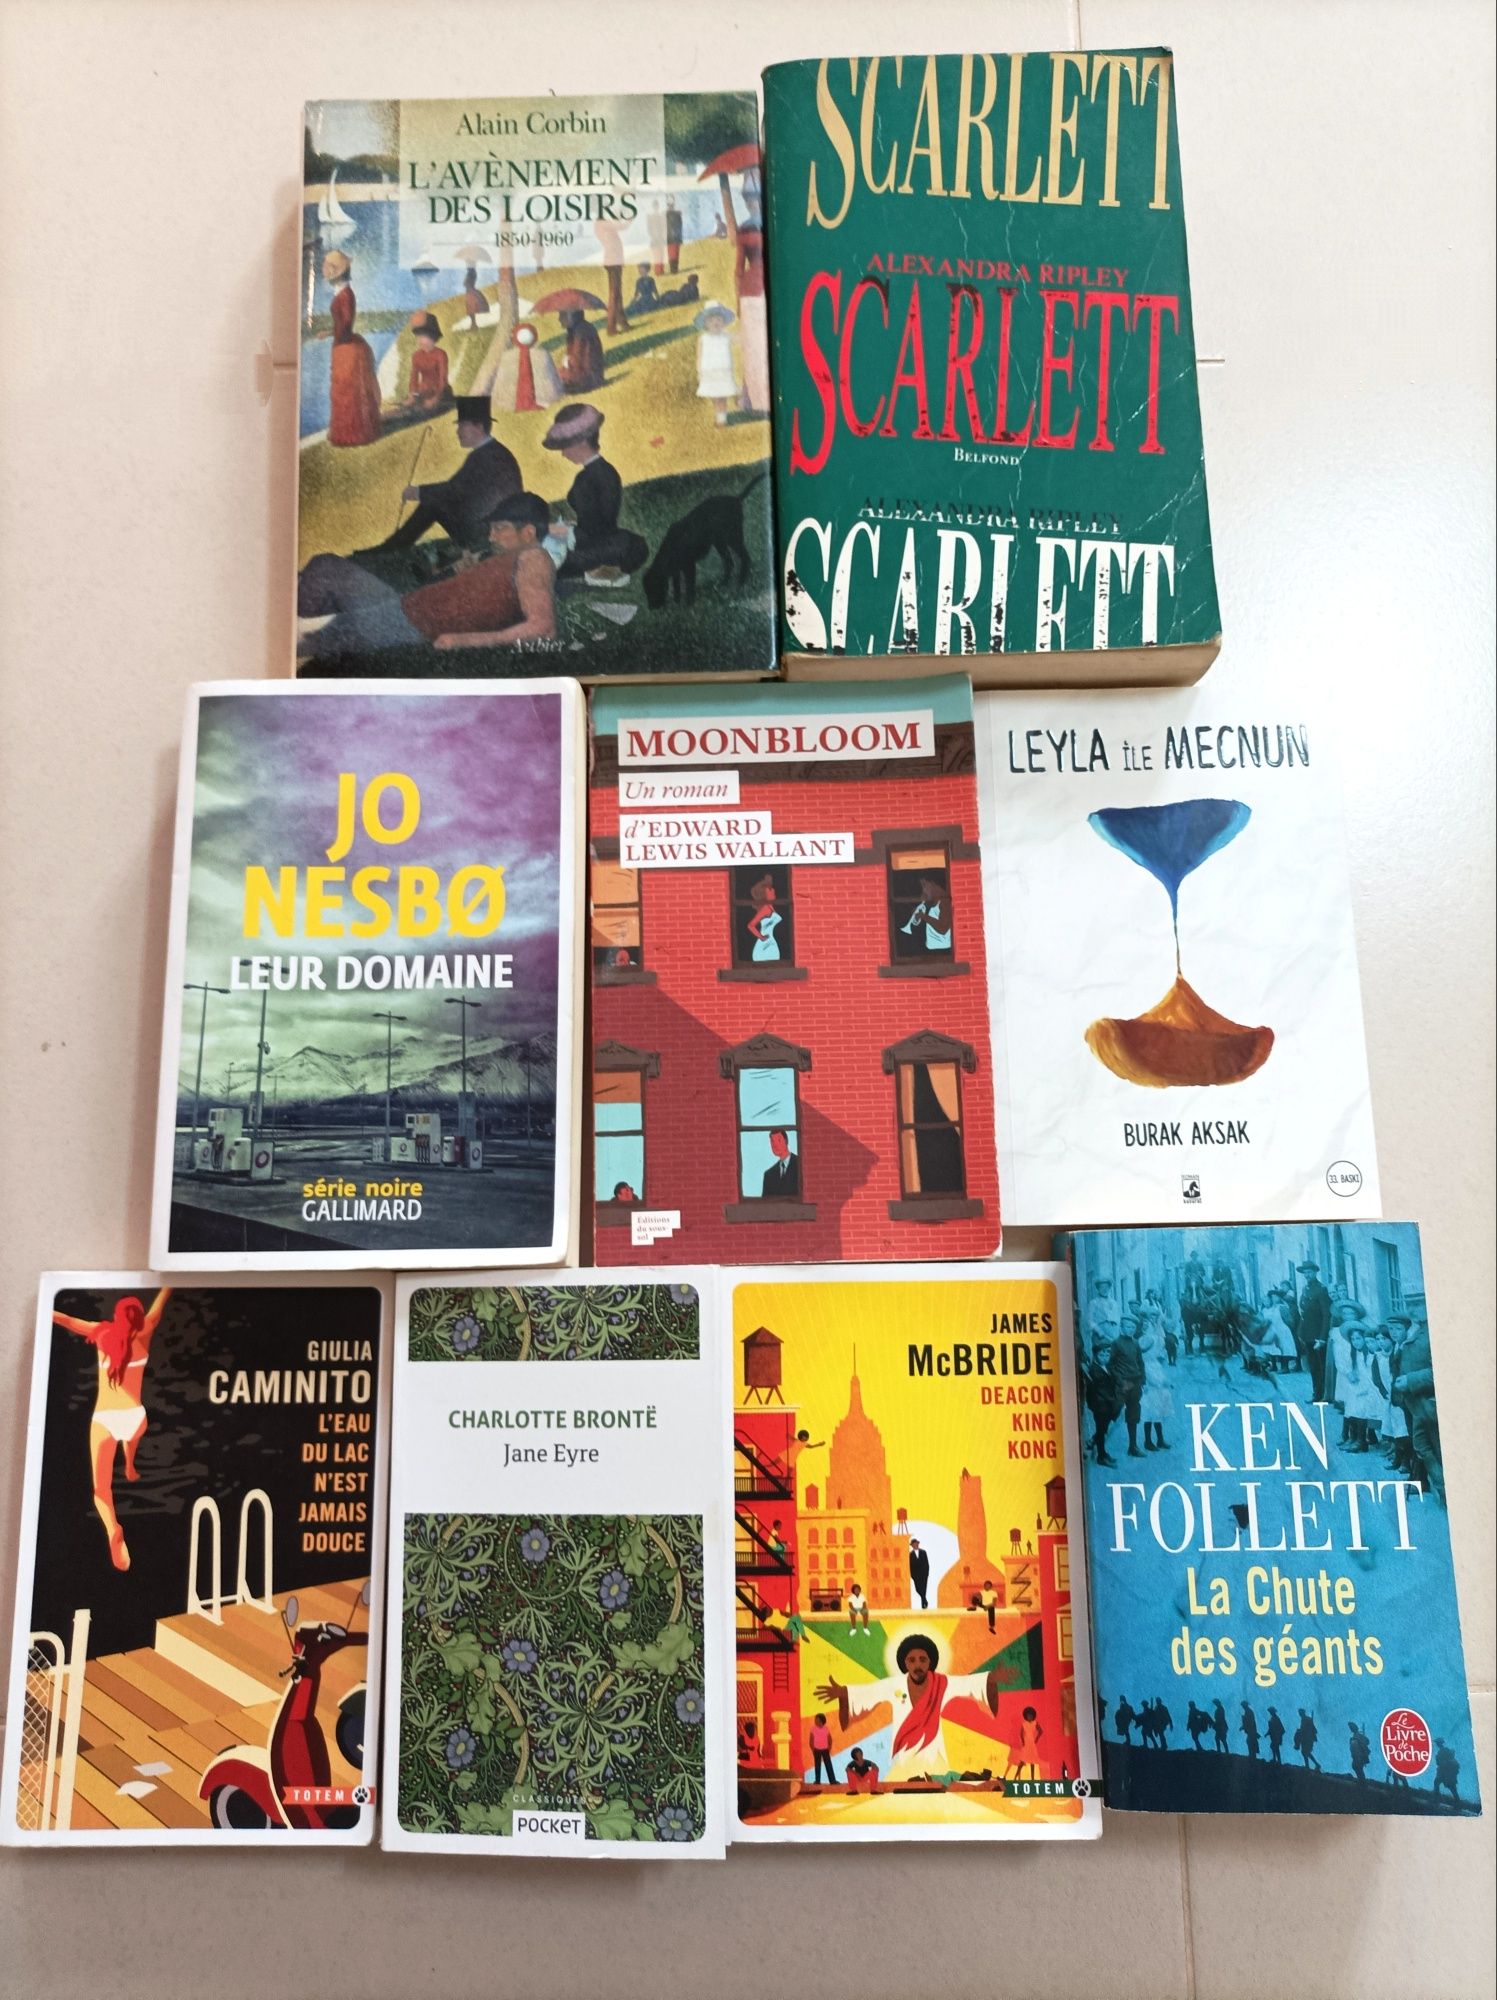 Lote de Livros em Francês - Ken Follett / Jo Nesbo